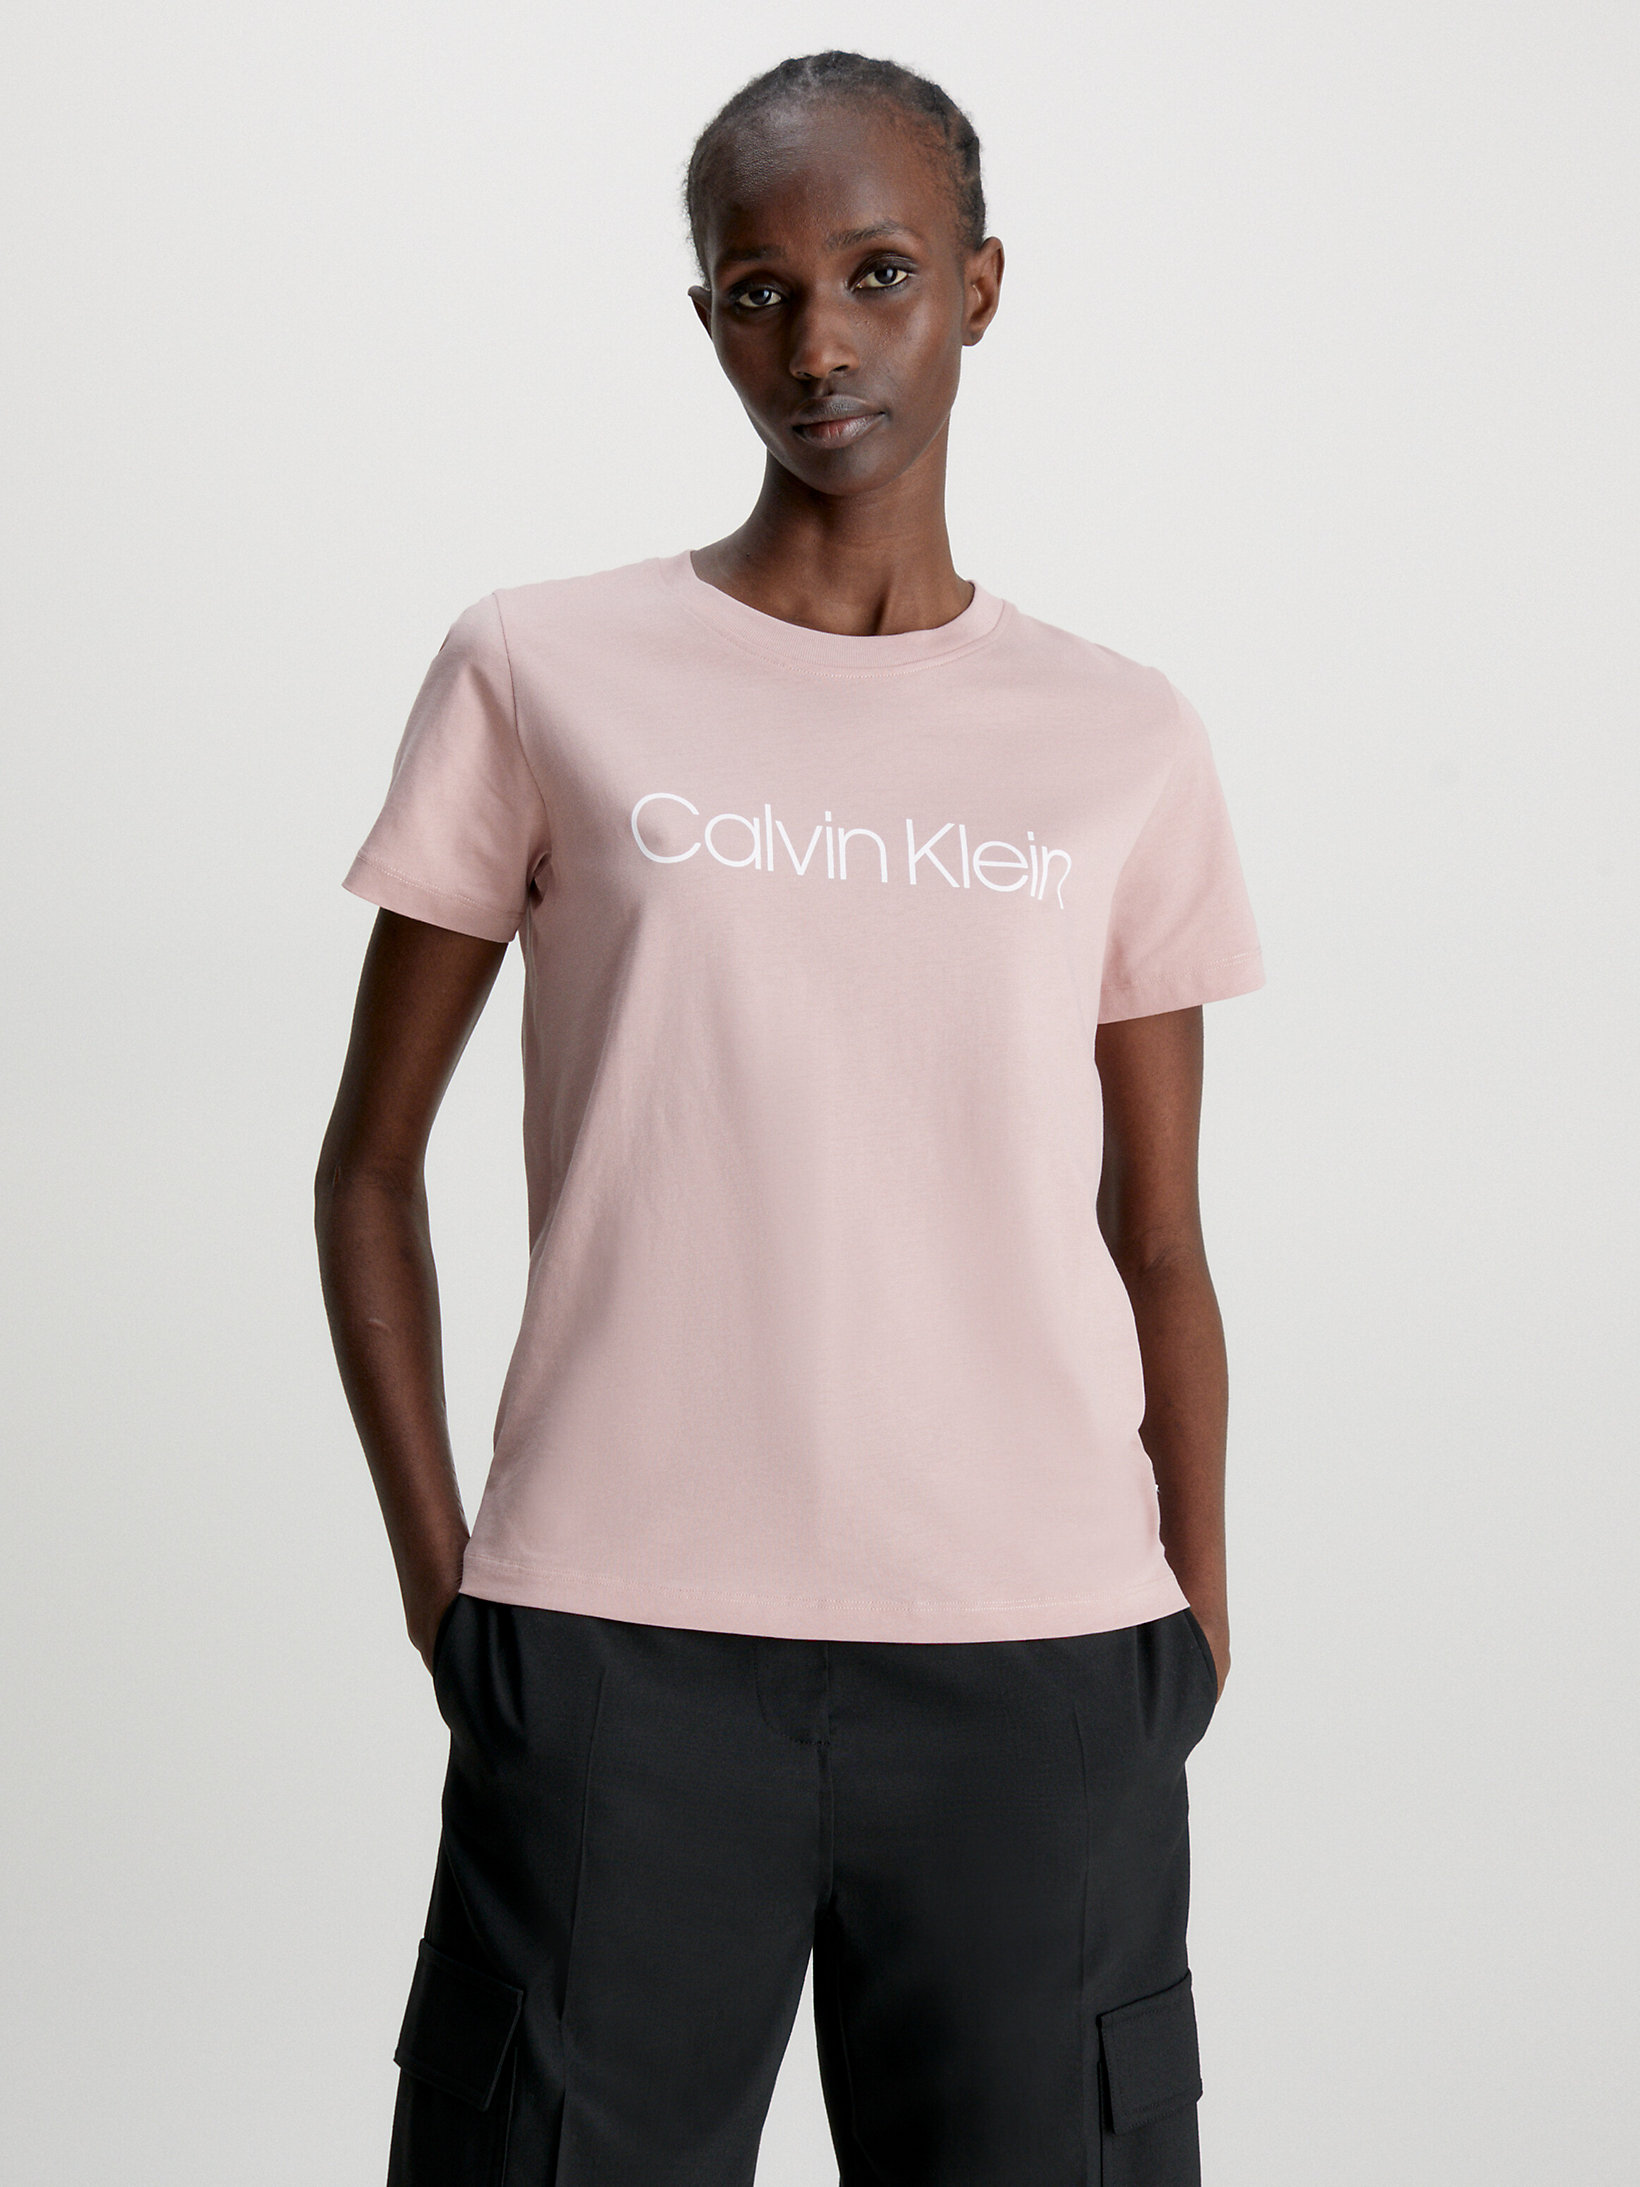 Calvin+KleinCalvin Klein T-Shirt Donna in Cotone Luxe con Logo 